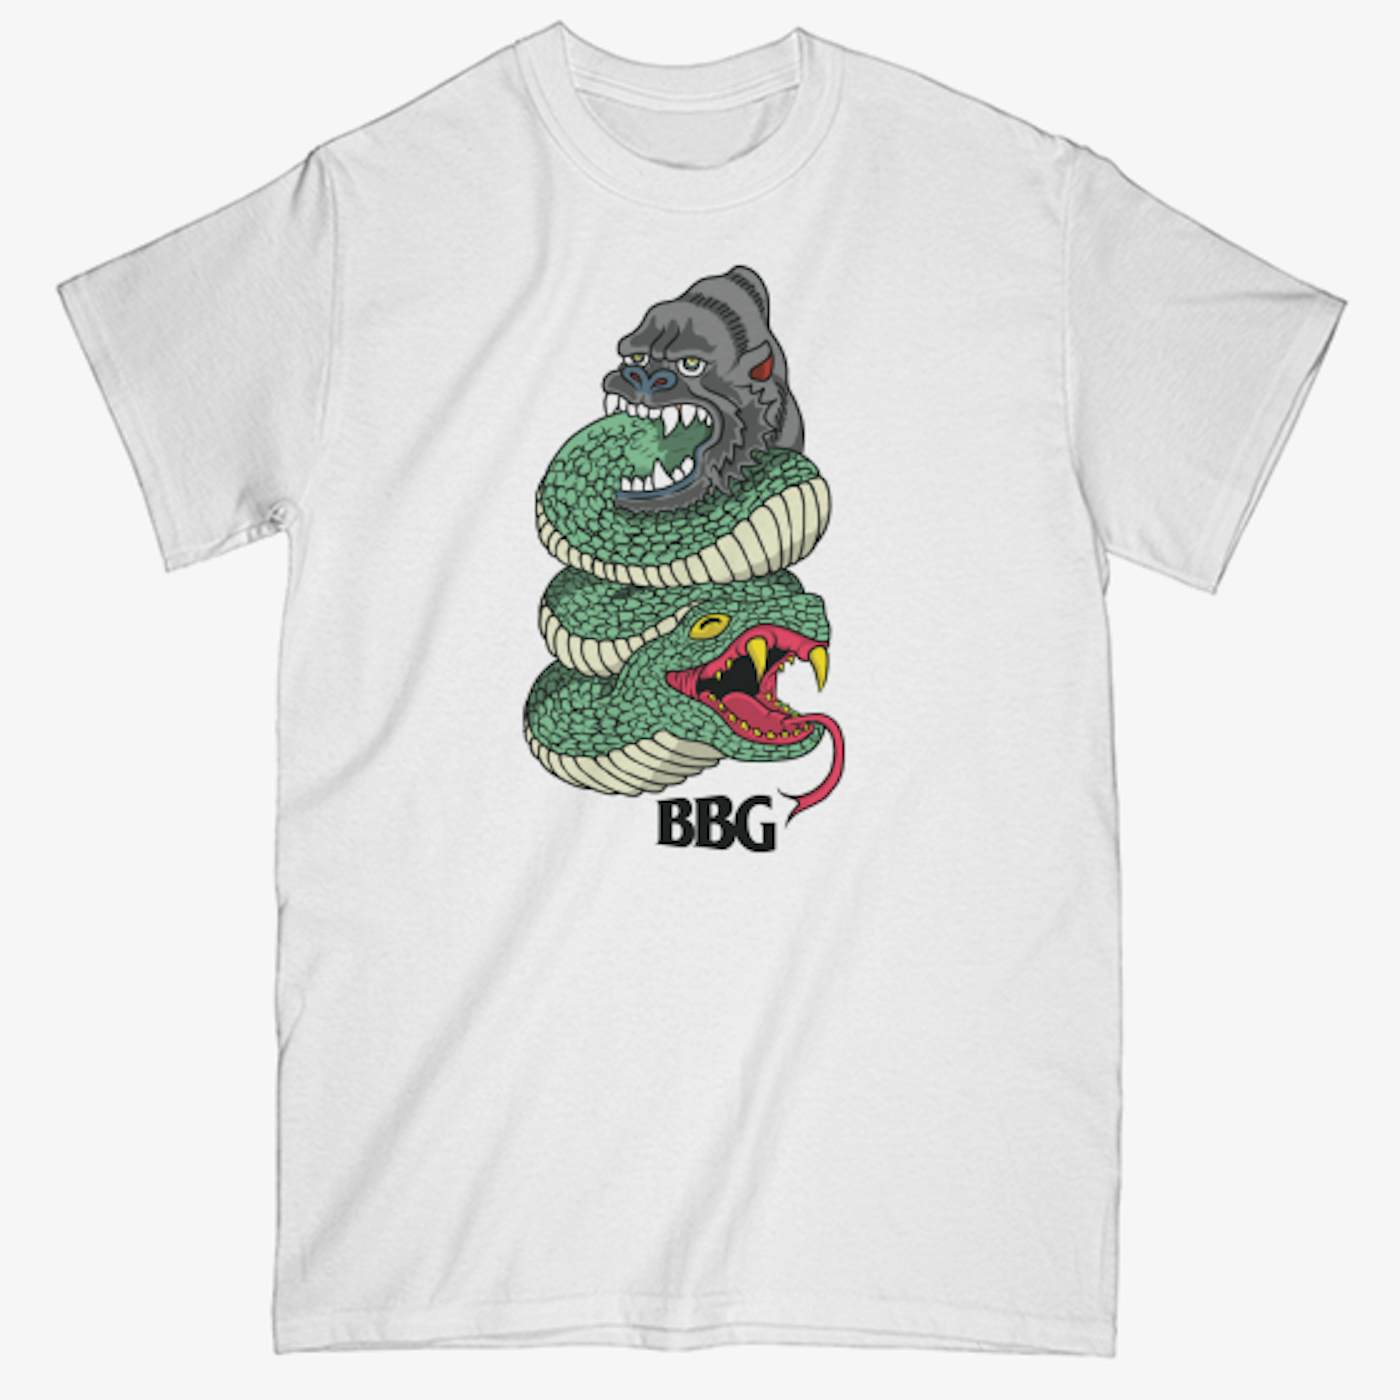 BBG Baby Joe BBG Snake T-shirt - Unisex Tee